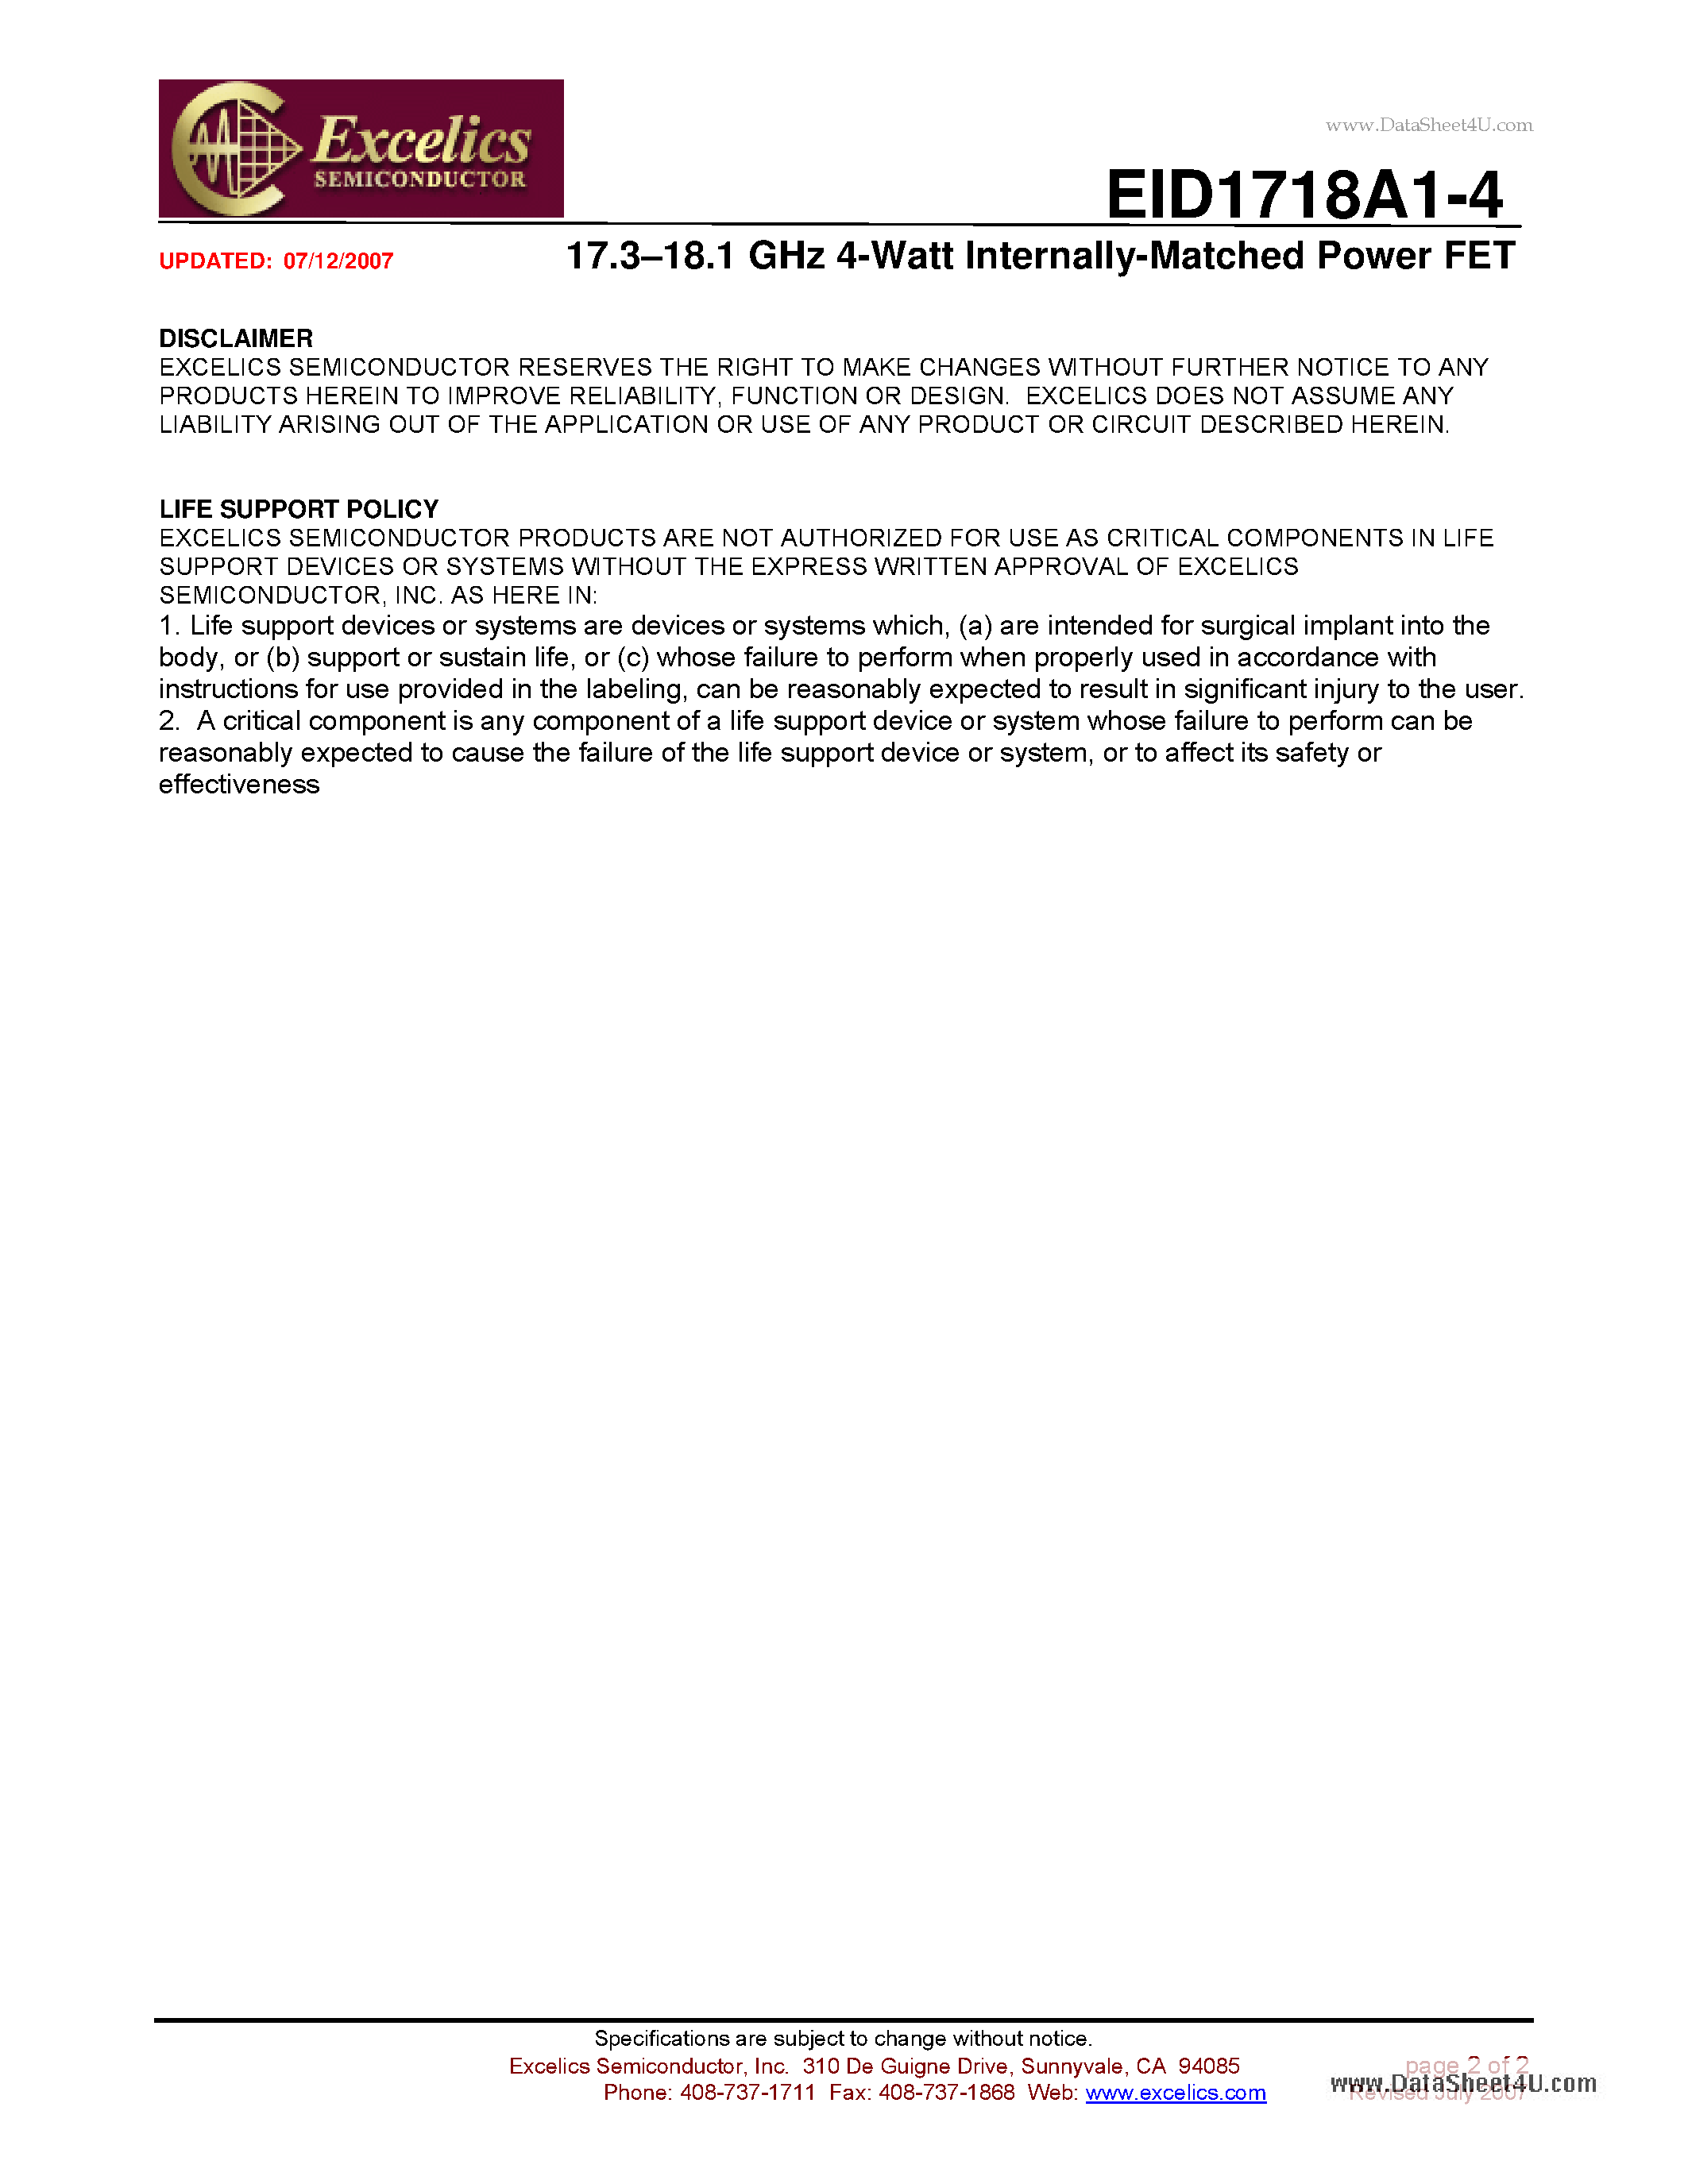 Даташит EID1718A1-4-17.3-18.1 GHz 4-Watt Internally-Matched Power FET страница 2